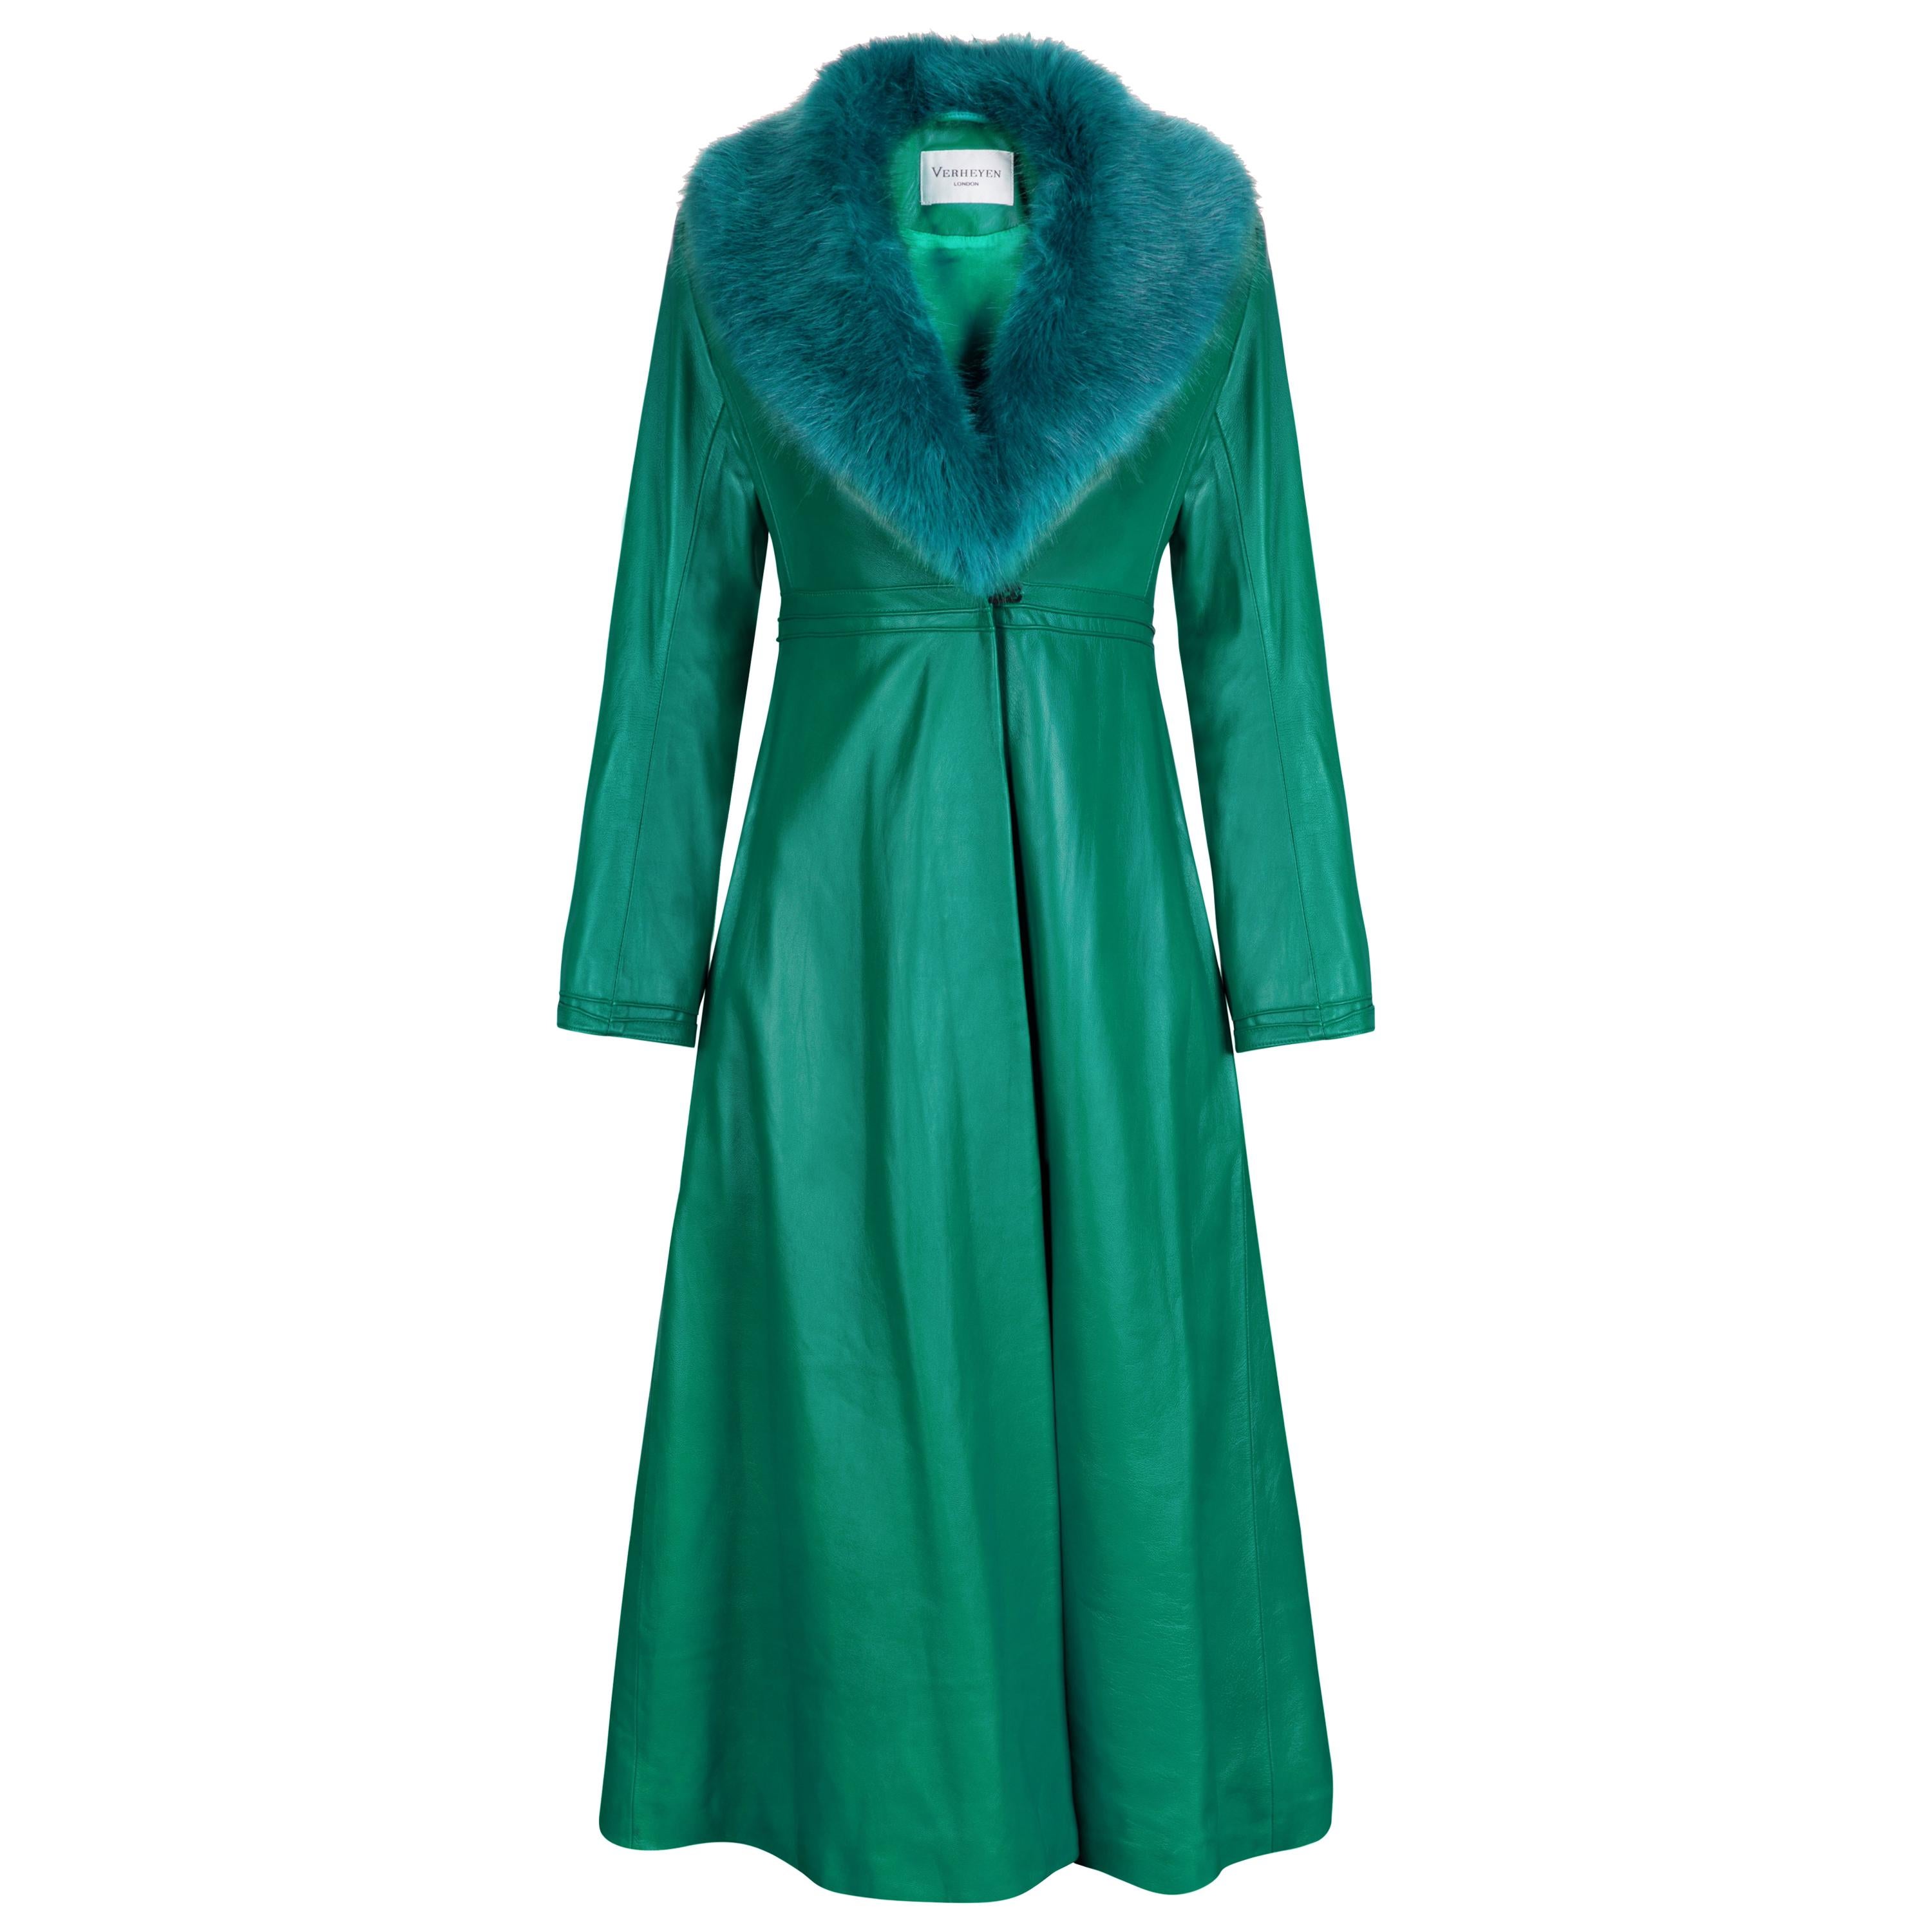 Verheyen London Edward Leather Coat in Green & Green Faux Fur - Size 8 UK  For Sale